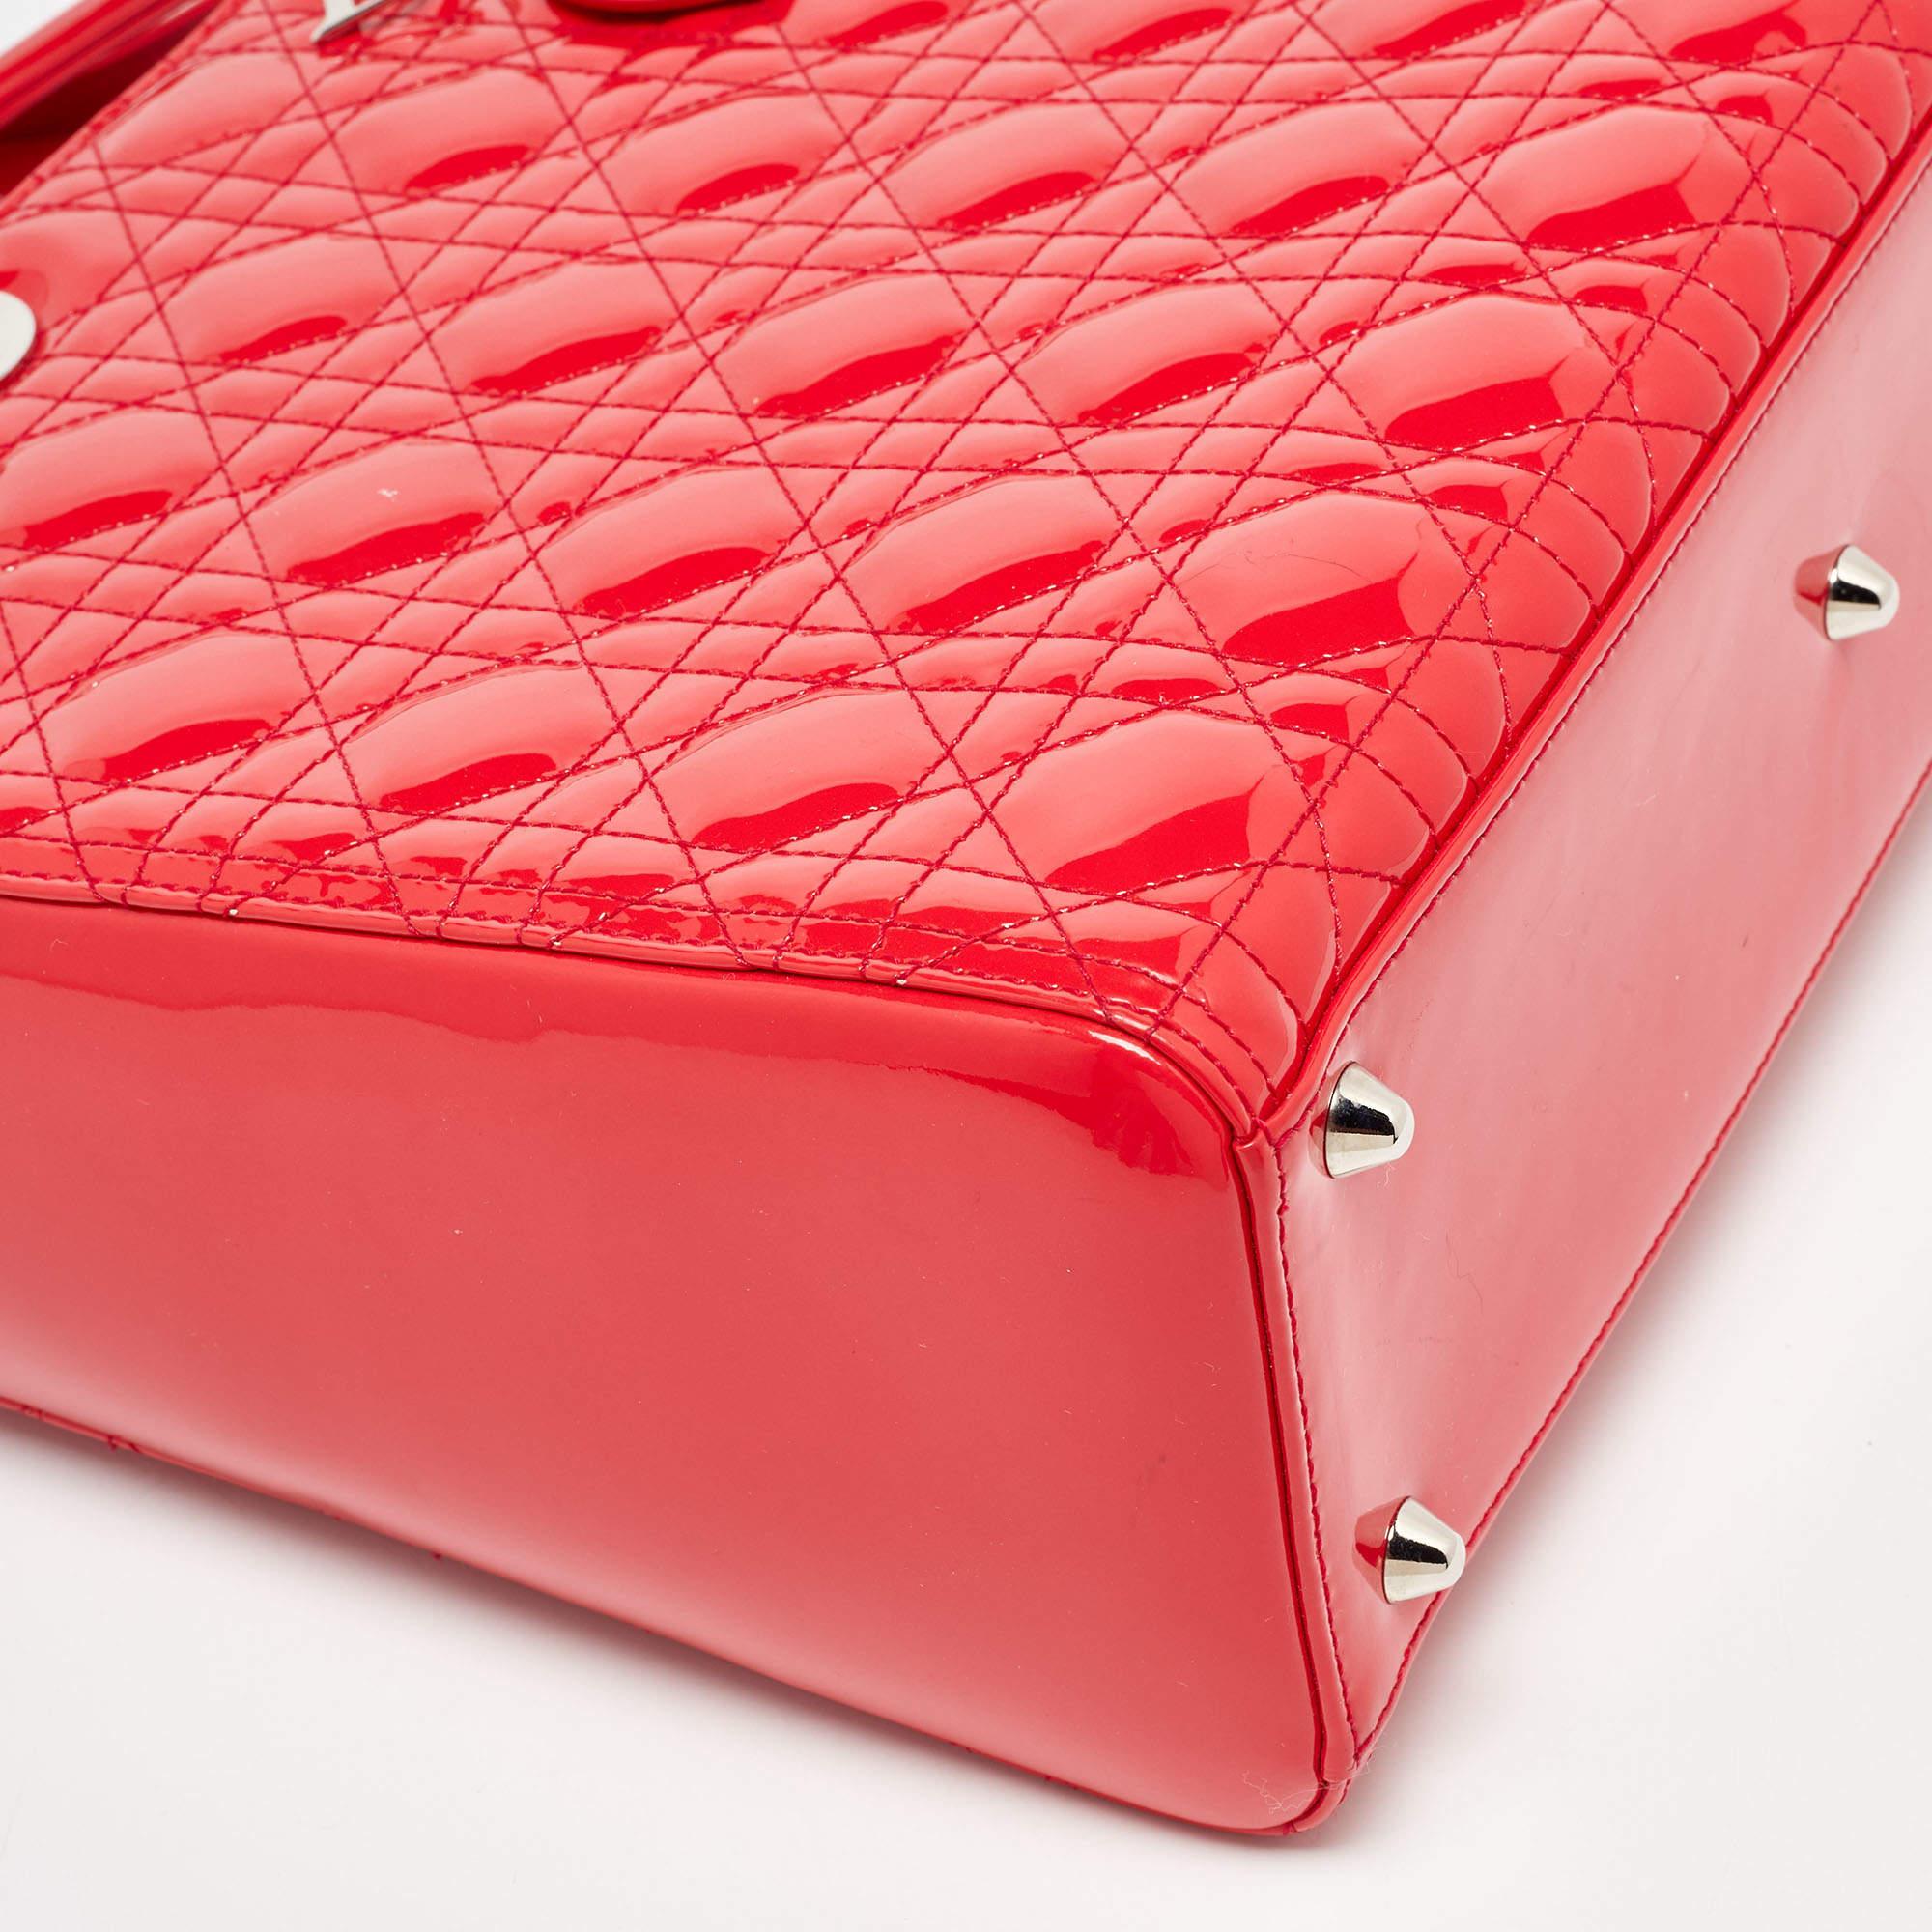 Dior - Grand sac cabas Lady Dior en cuir verni rouge cannage 2